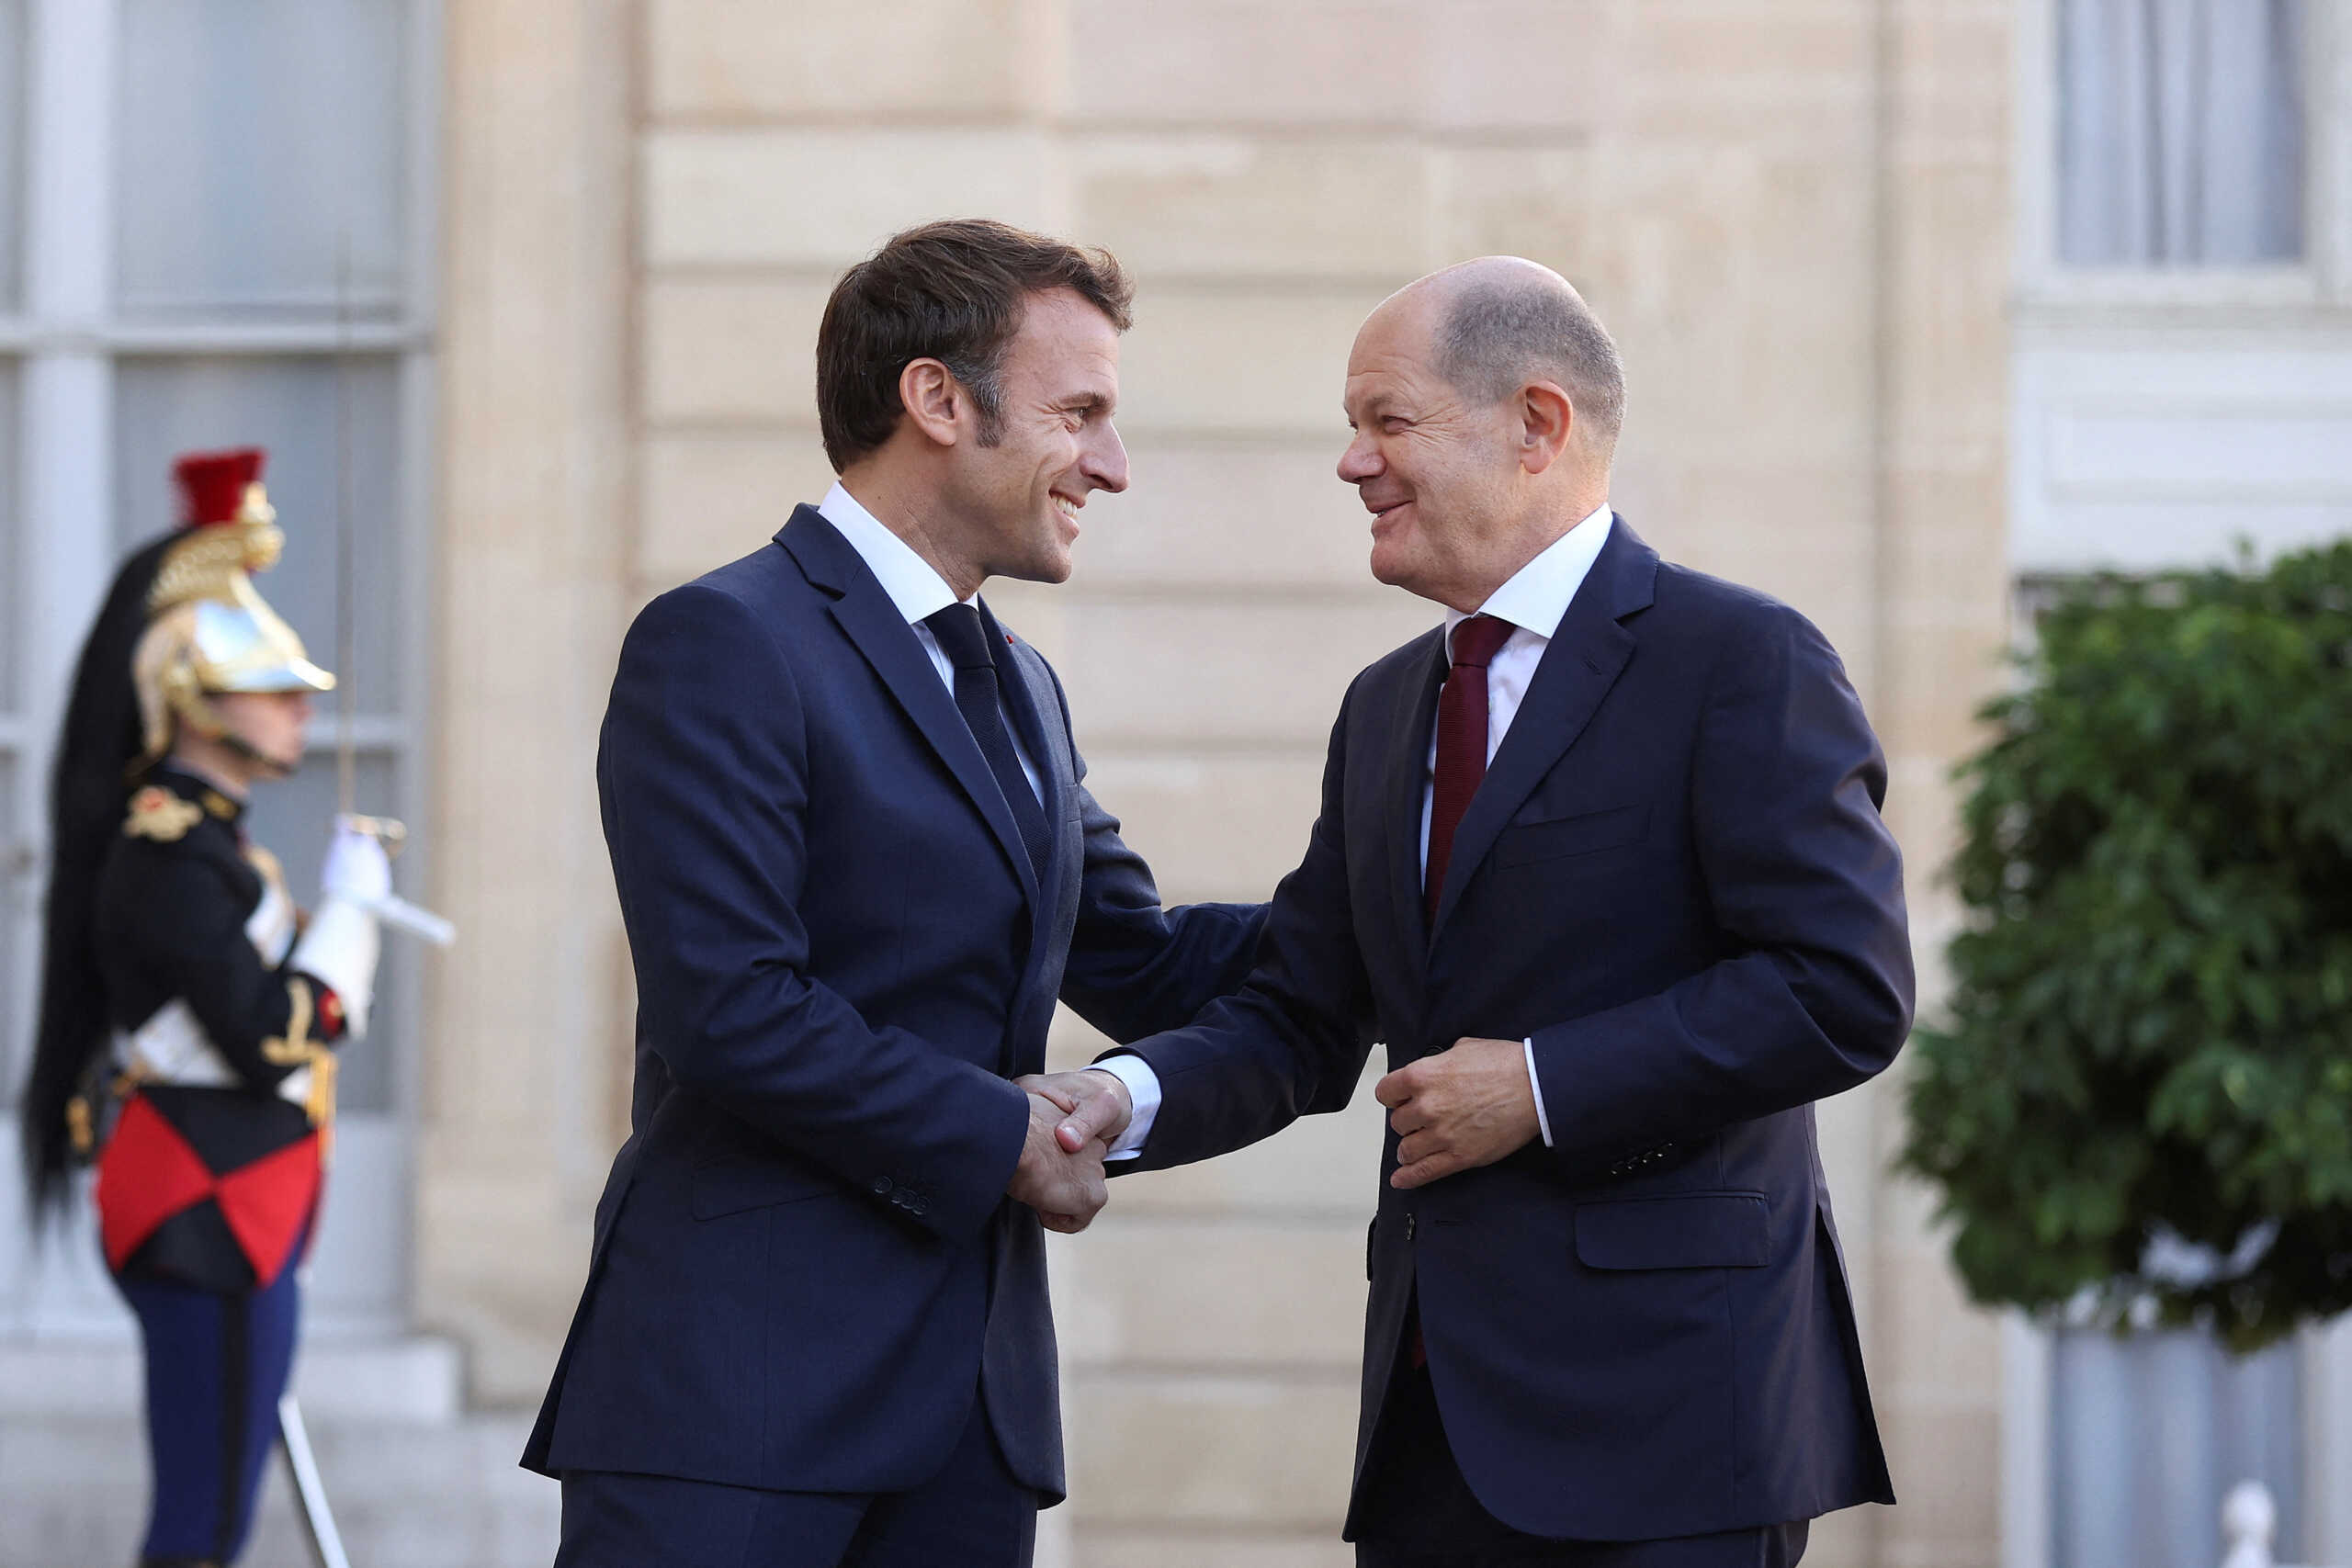 Συνάντηση Μακρόν και Σολτς στο Παρίσι – Θα προεδρεύσουν κοινής συνεδρίασης των υπουργικών συμβουλίων τους